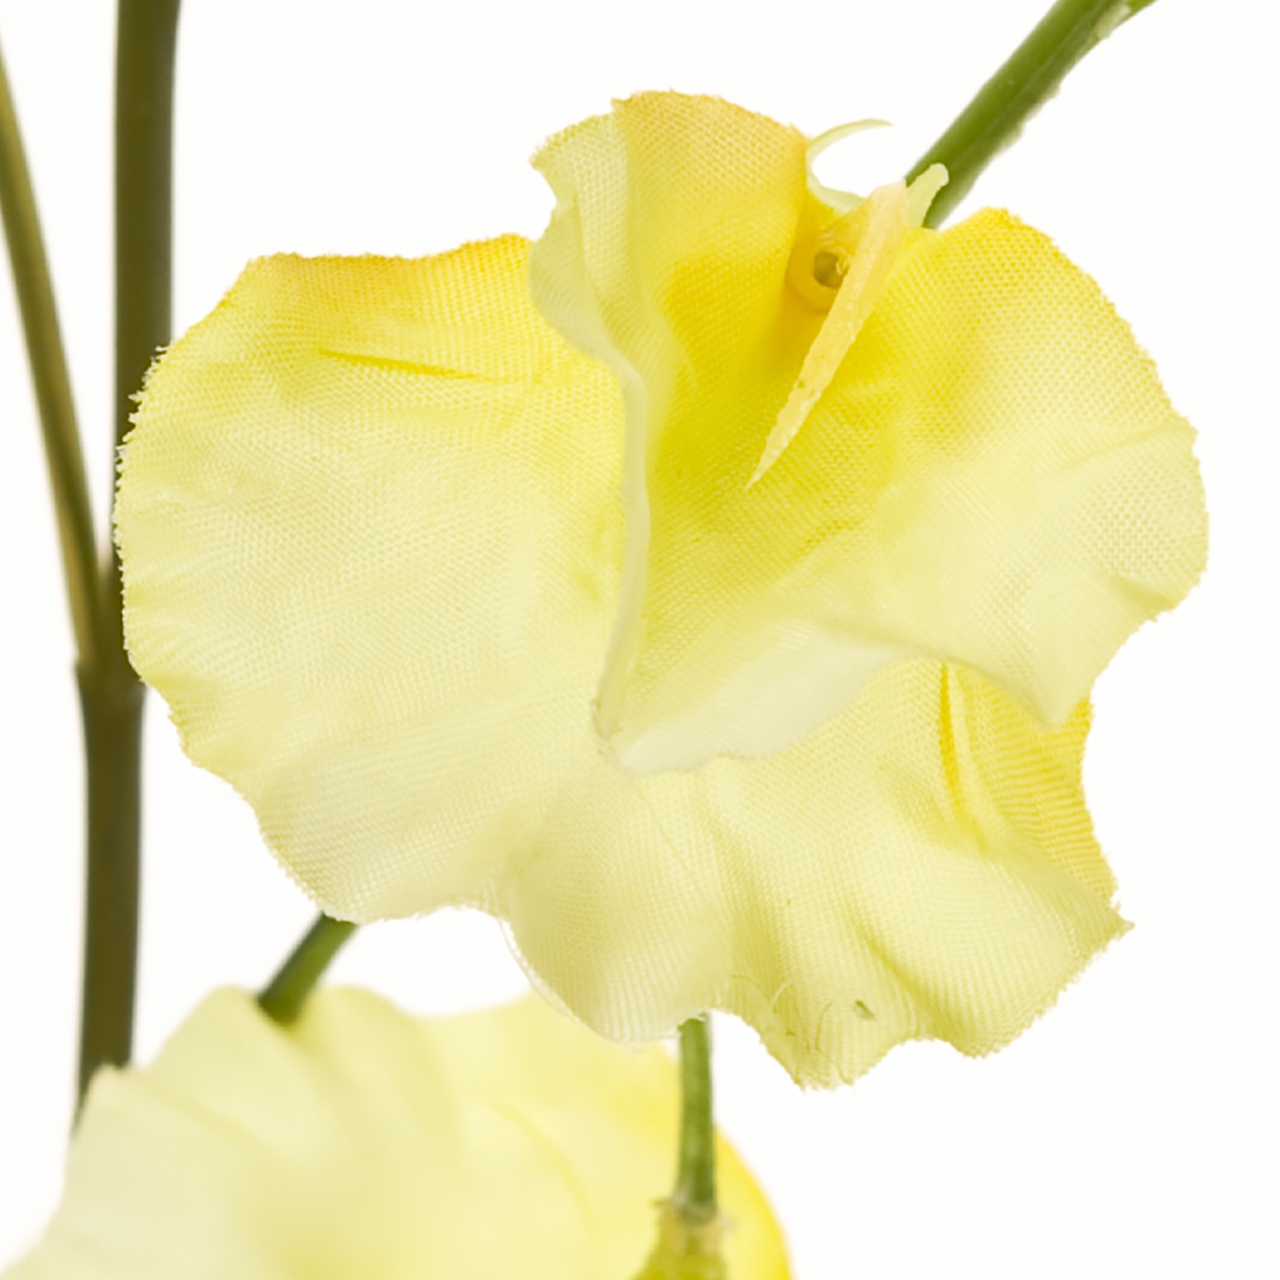 マイフラ 通販 完売品 Magiq パピヨンスイトピー イエロー アーティフィシャルフラワー 造花 Fm 004 スイートピー イエロー Magiq アーティフィシャルフラワー 造花 全国にmagiq 花器 花資材などをお届けします